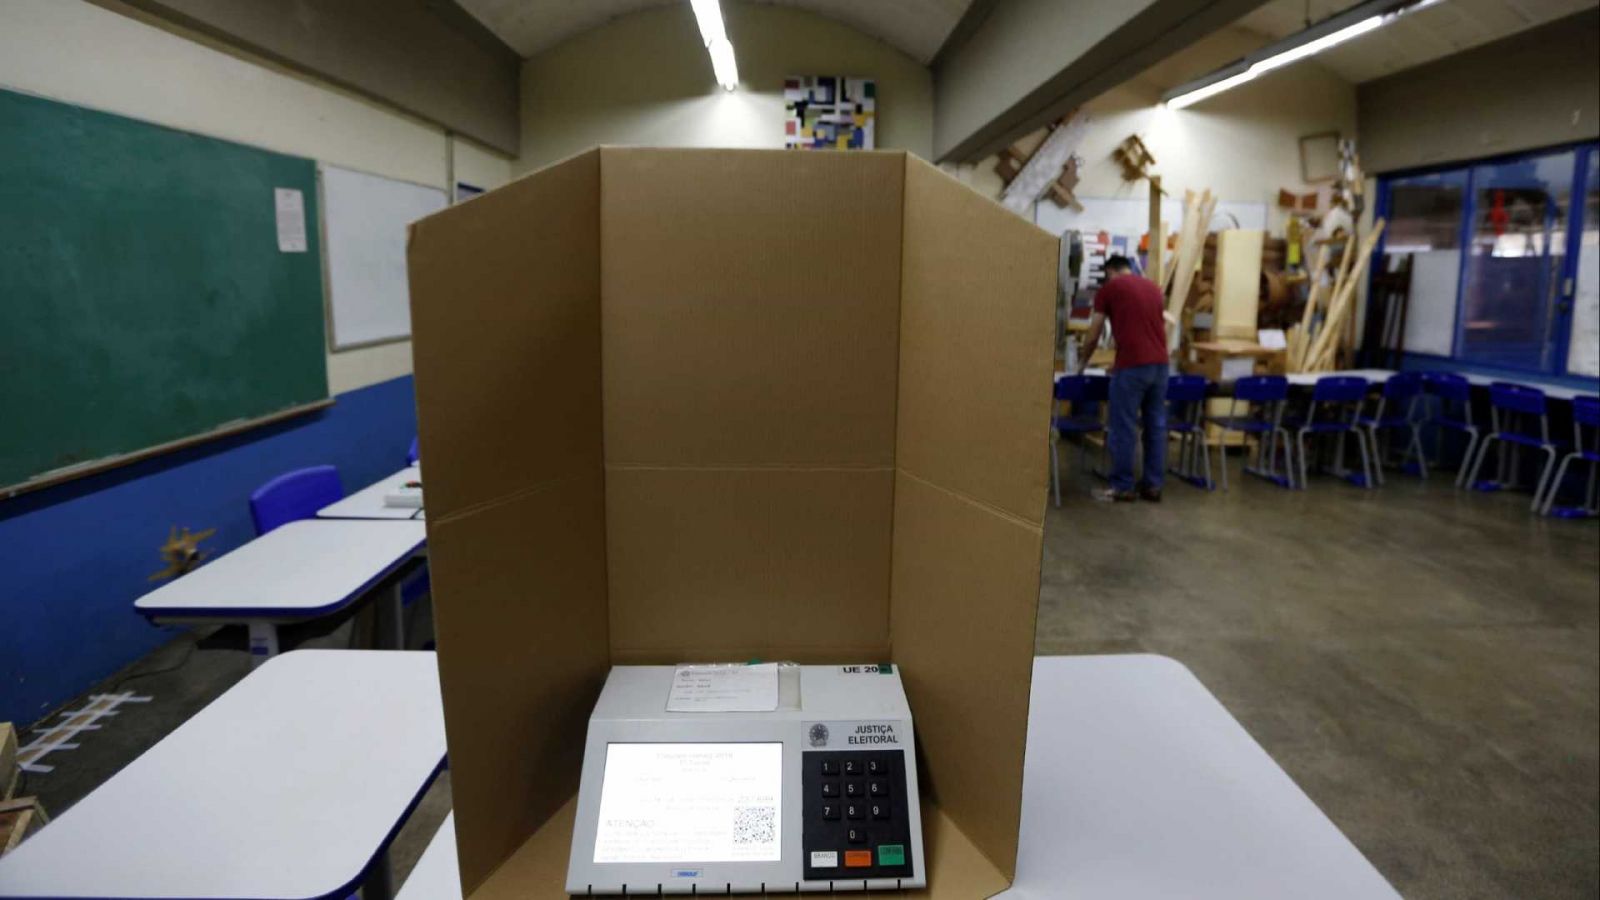 VOTAÇÃO NO EXTERIOR É ENCERRADA EM 18 PAÍSES - News Rondônia